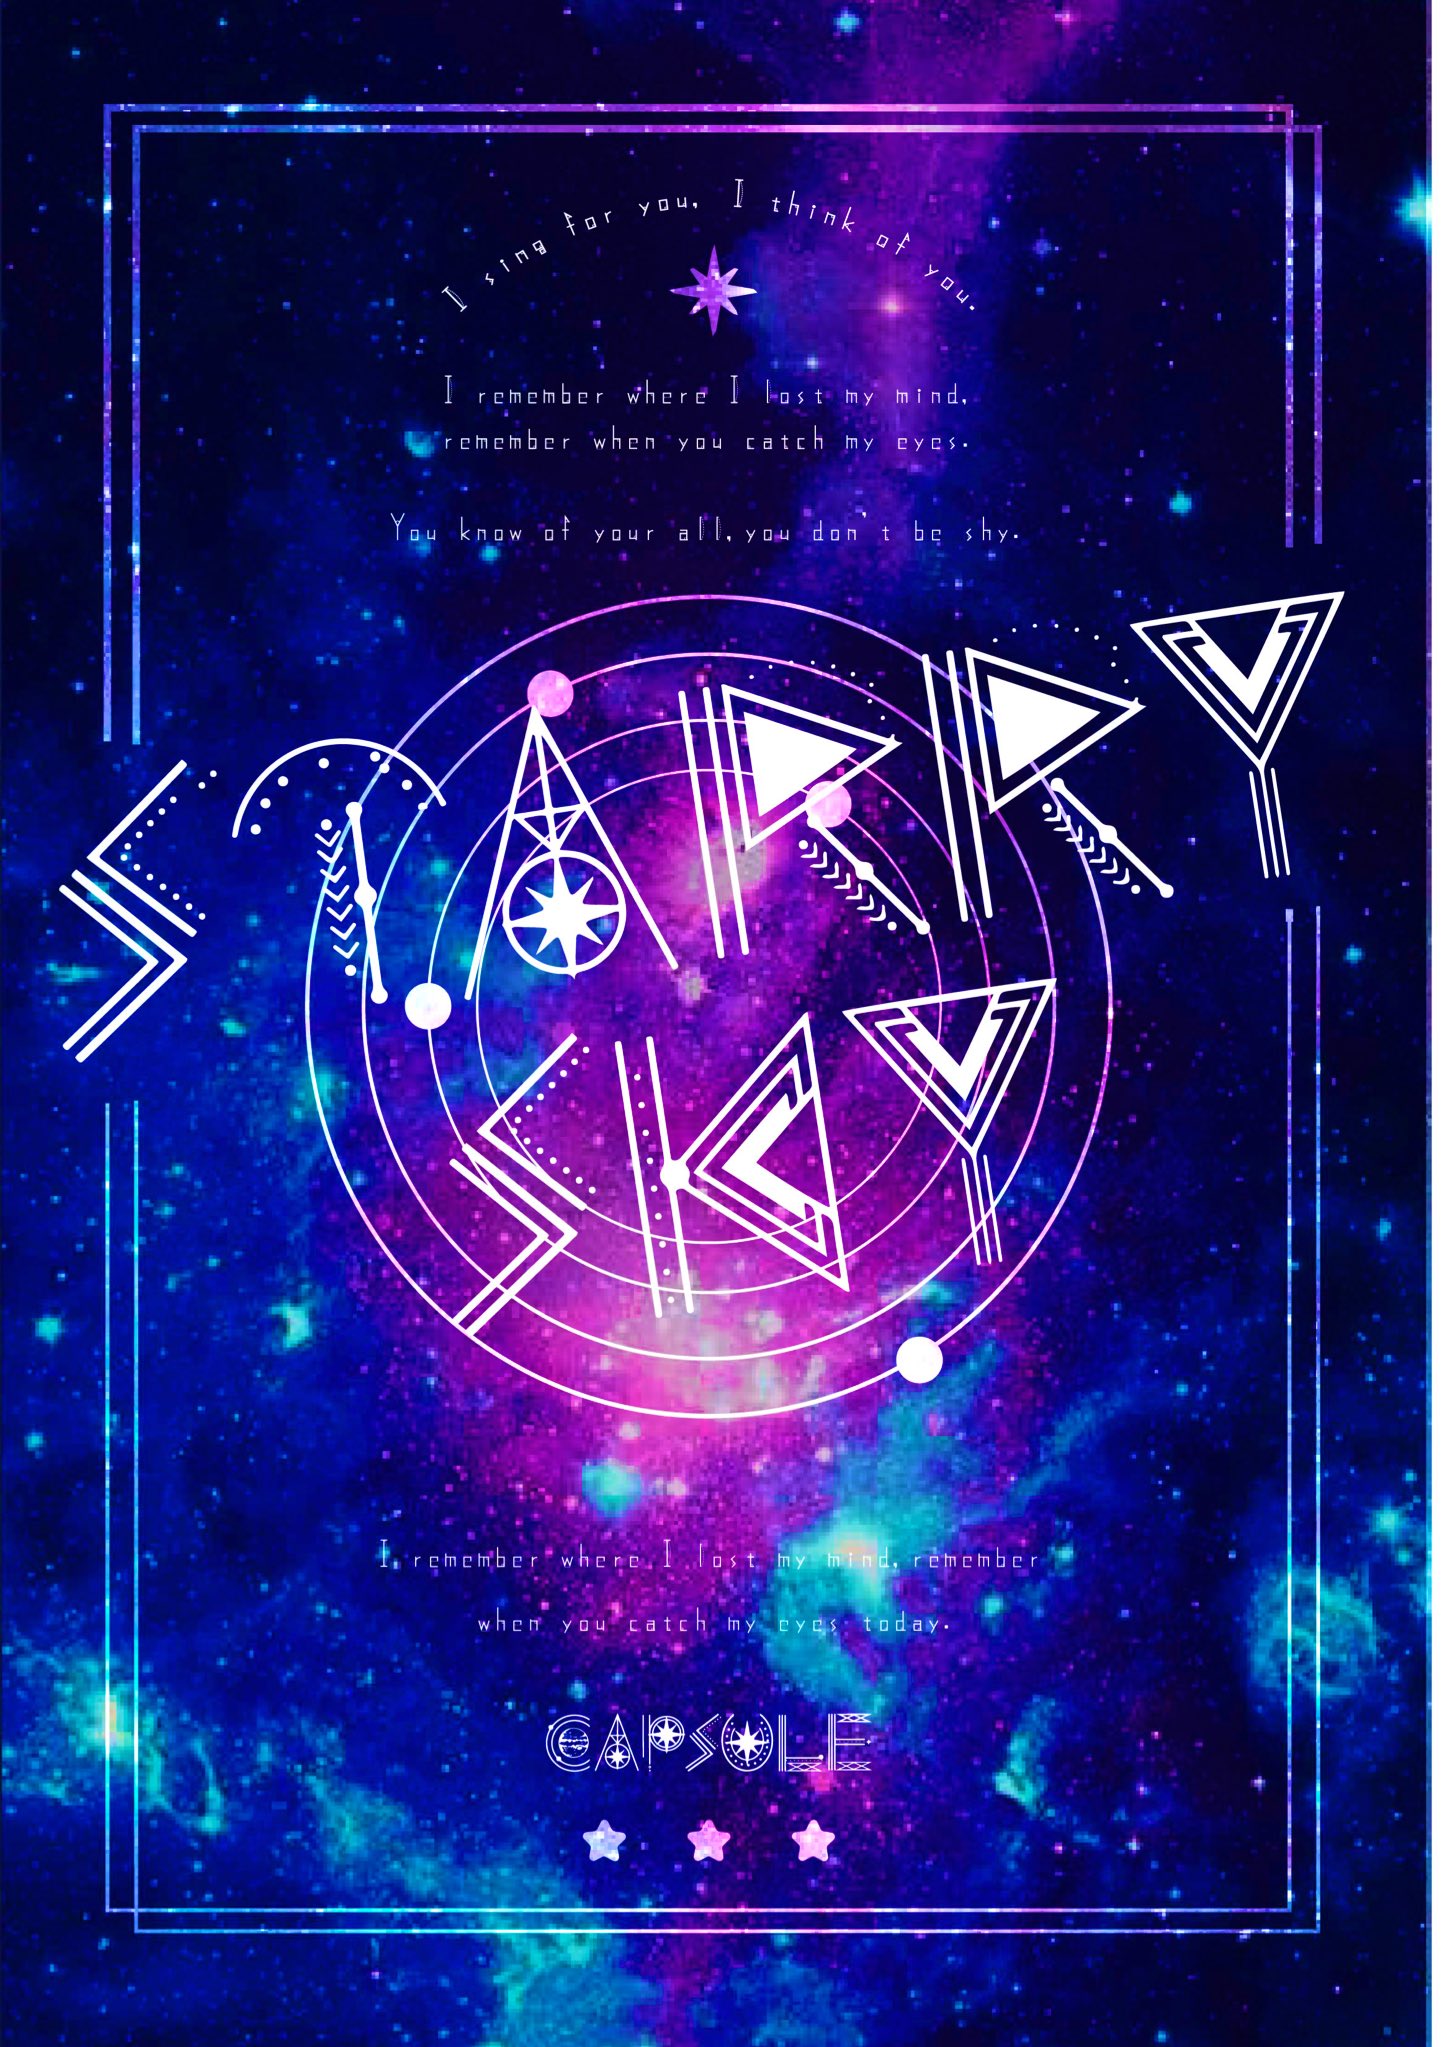 038 Space Font タイポグラフィ の課題で 数学や天文学的な記号を分解して文字にしたら素敵になるのでは と思ったのでレトロフューチャー的な要素を加えたsf風な文字を制作しました Capsuleの Starry Sky から思いついた文字なので それをイメージ